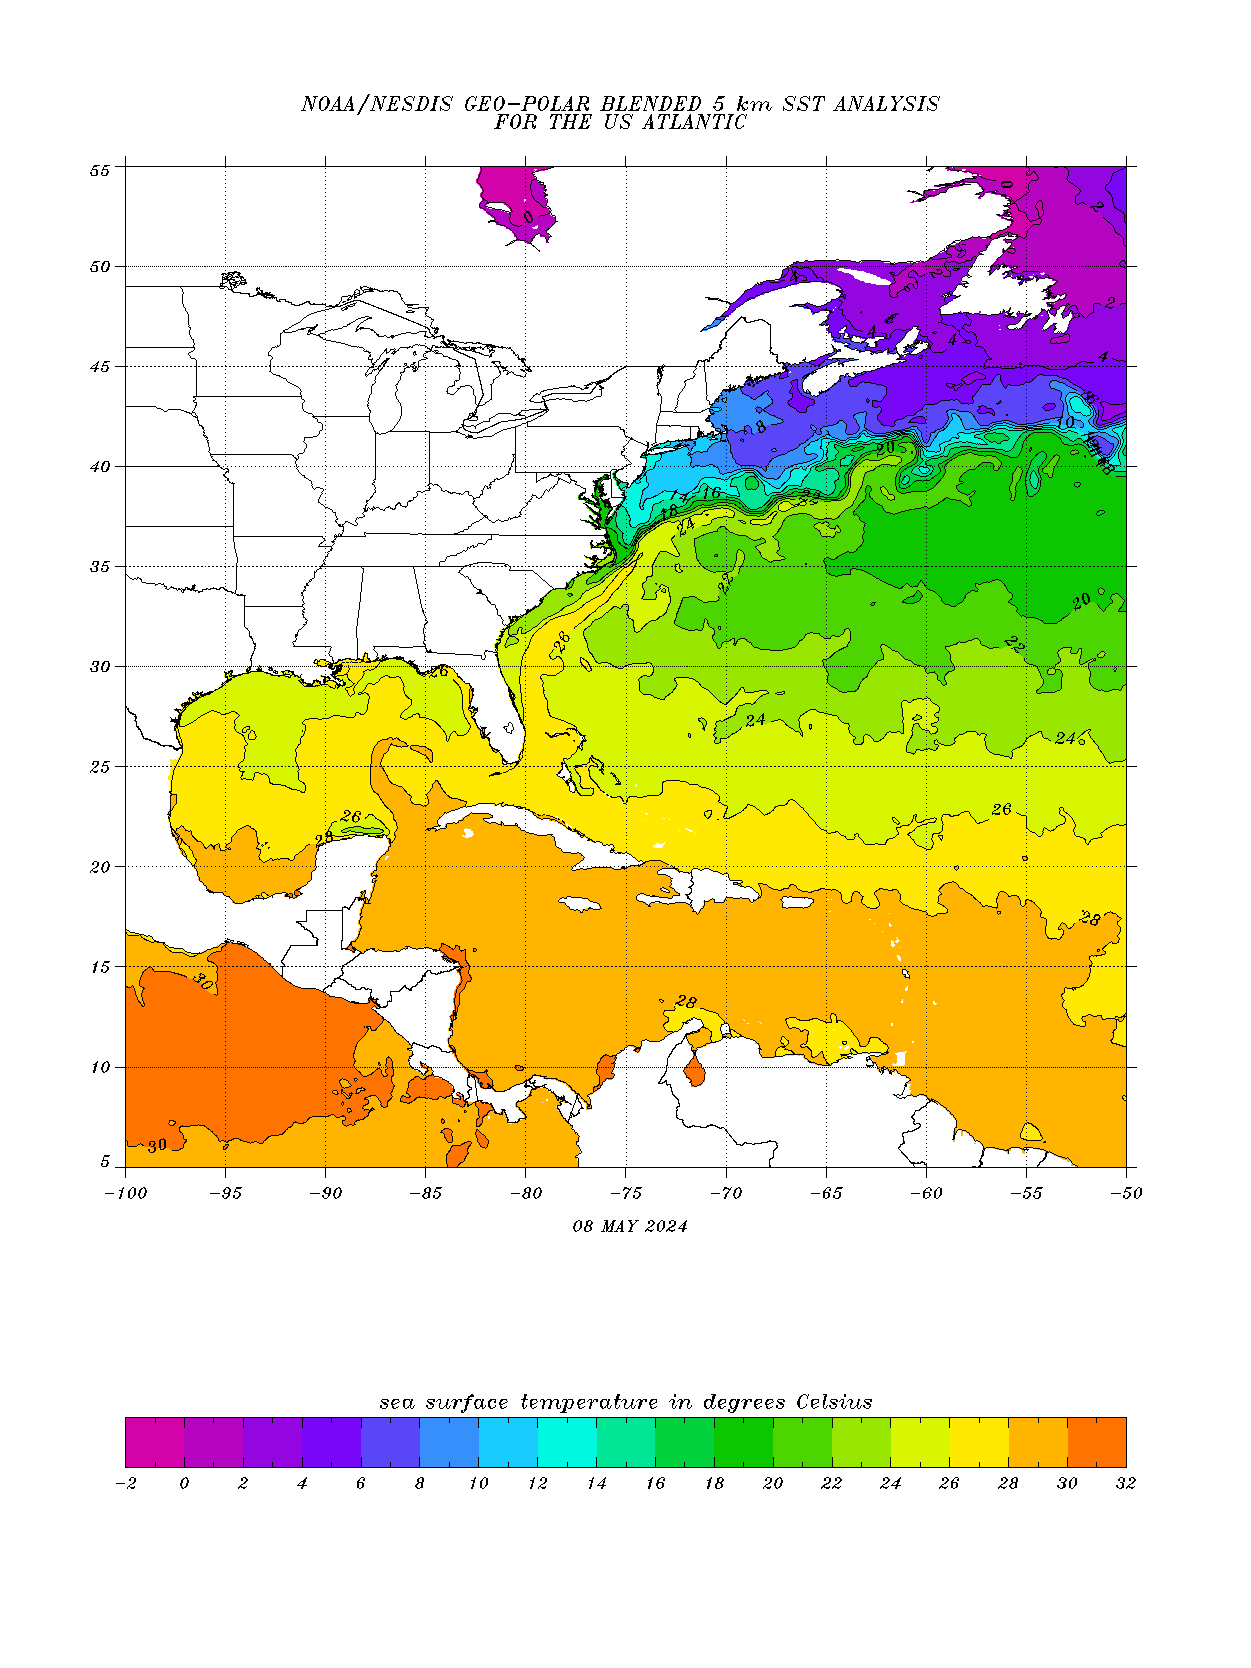 Atlantic Sea Temperatures